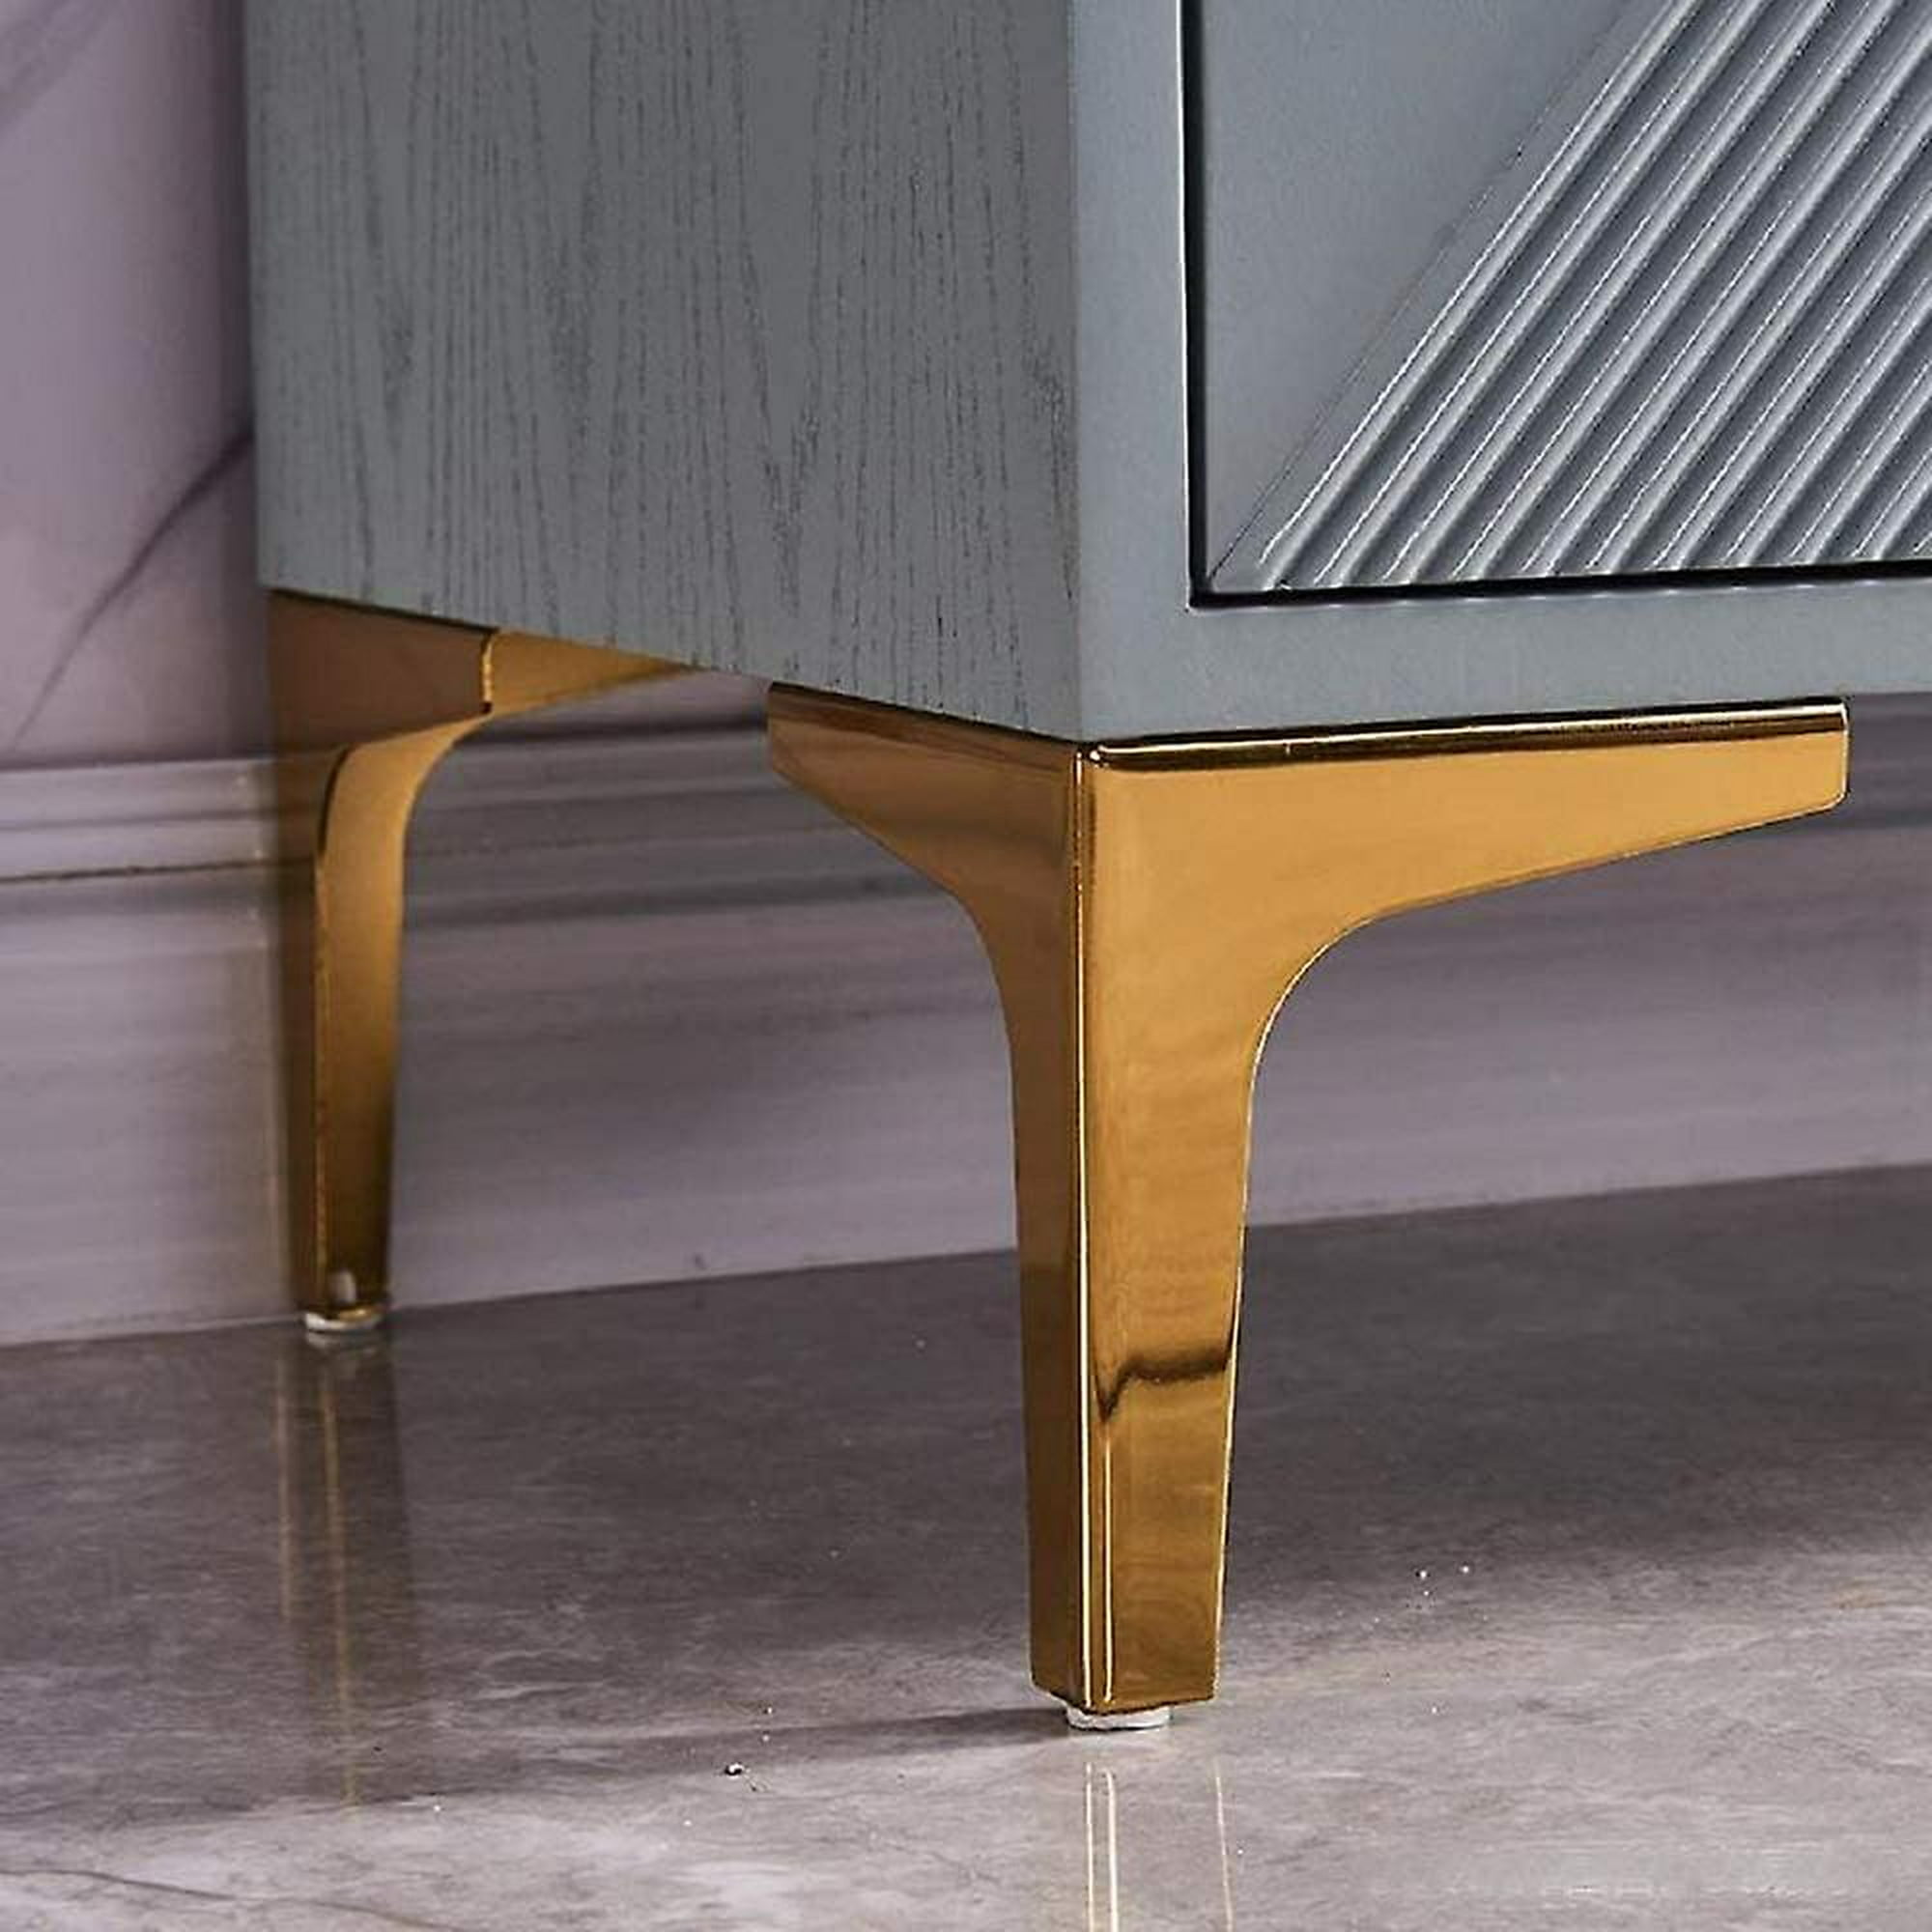 Btowin - Patas de metal para muebles de 6 pulgadas, 4 piezas, modernas,  cónicas, de montaje lateral, patas de repuesto doradas para gabinete